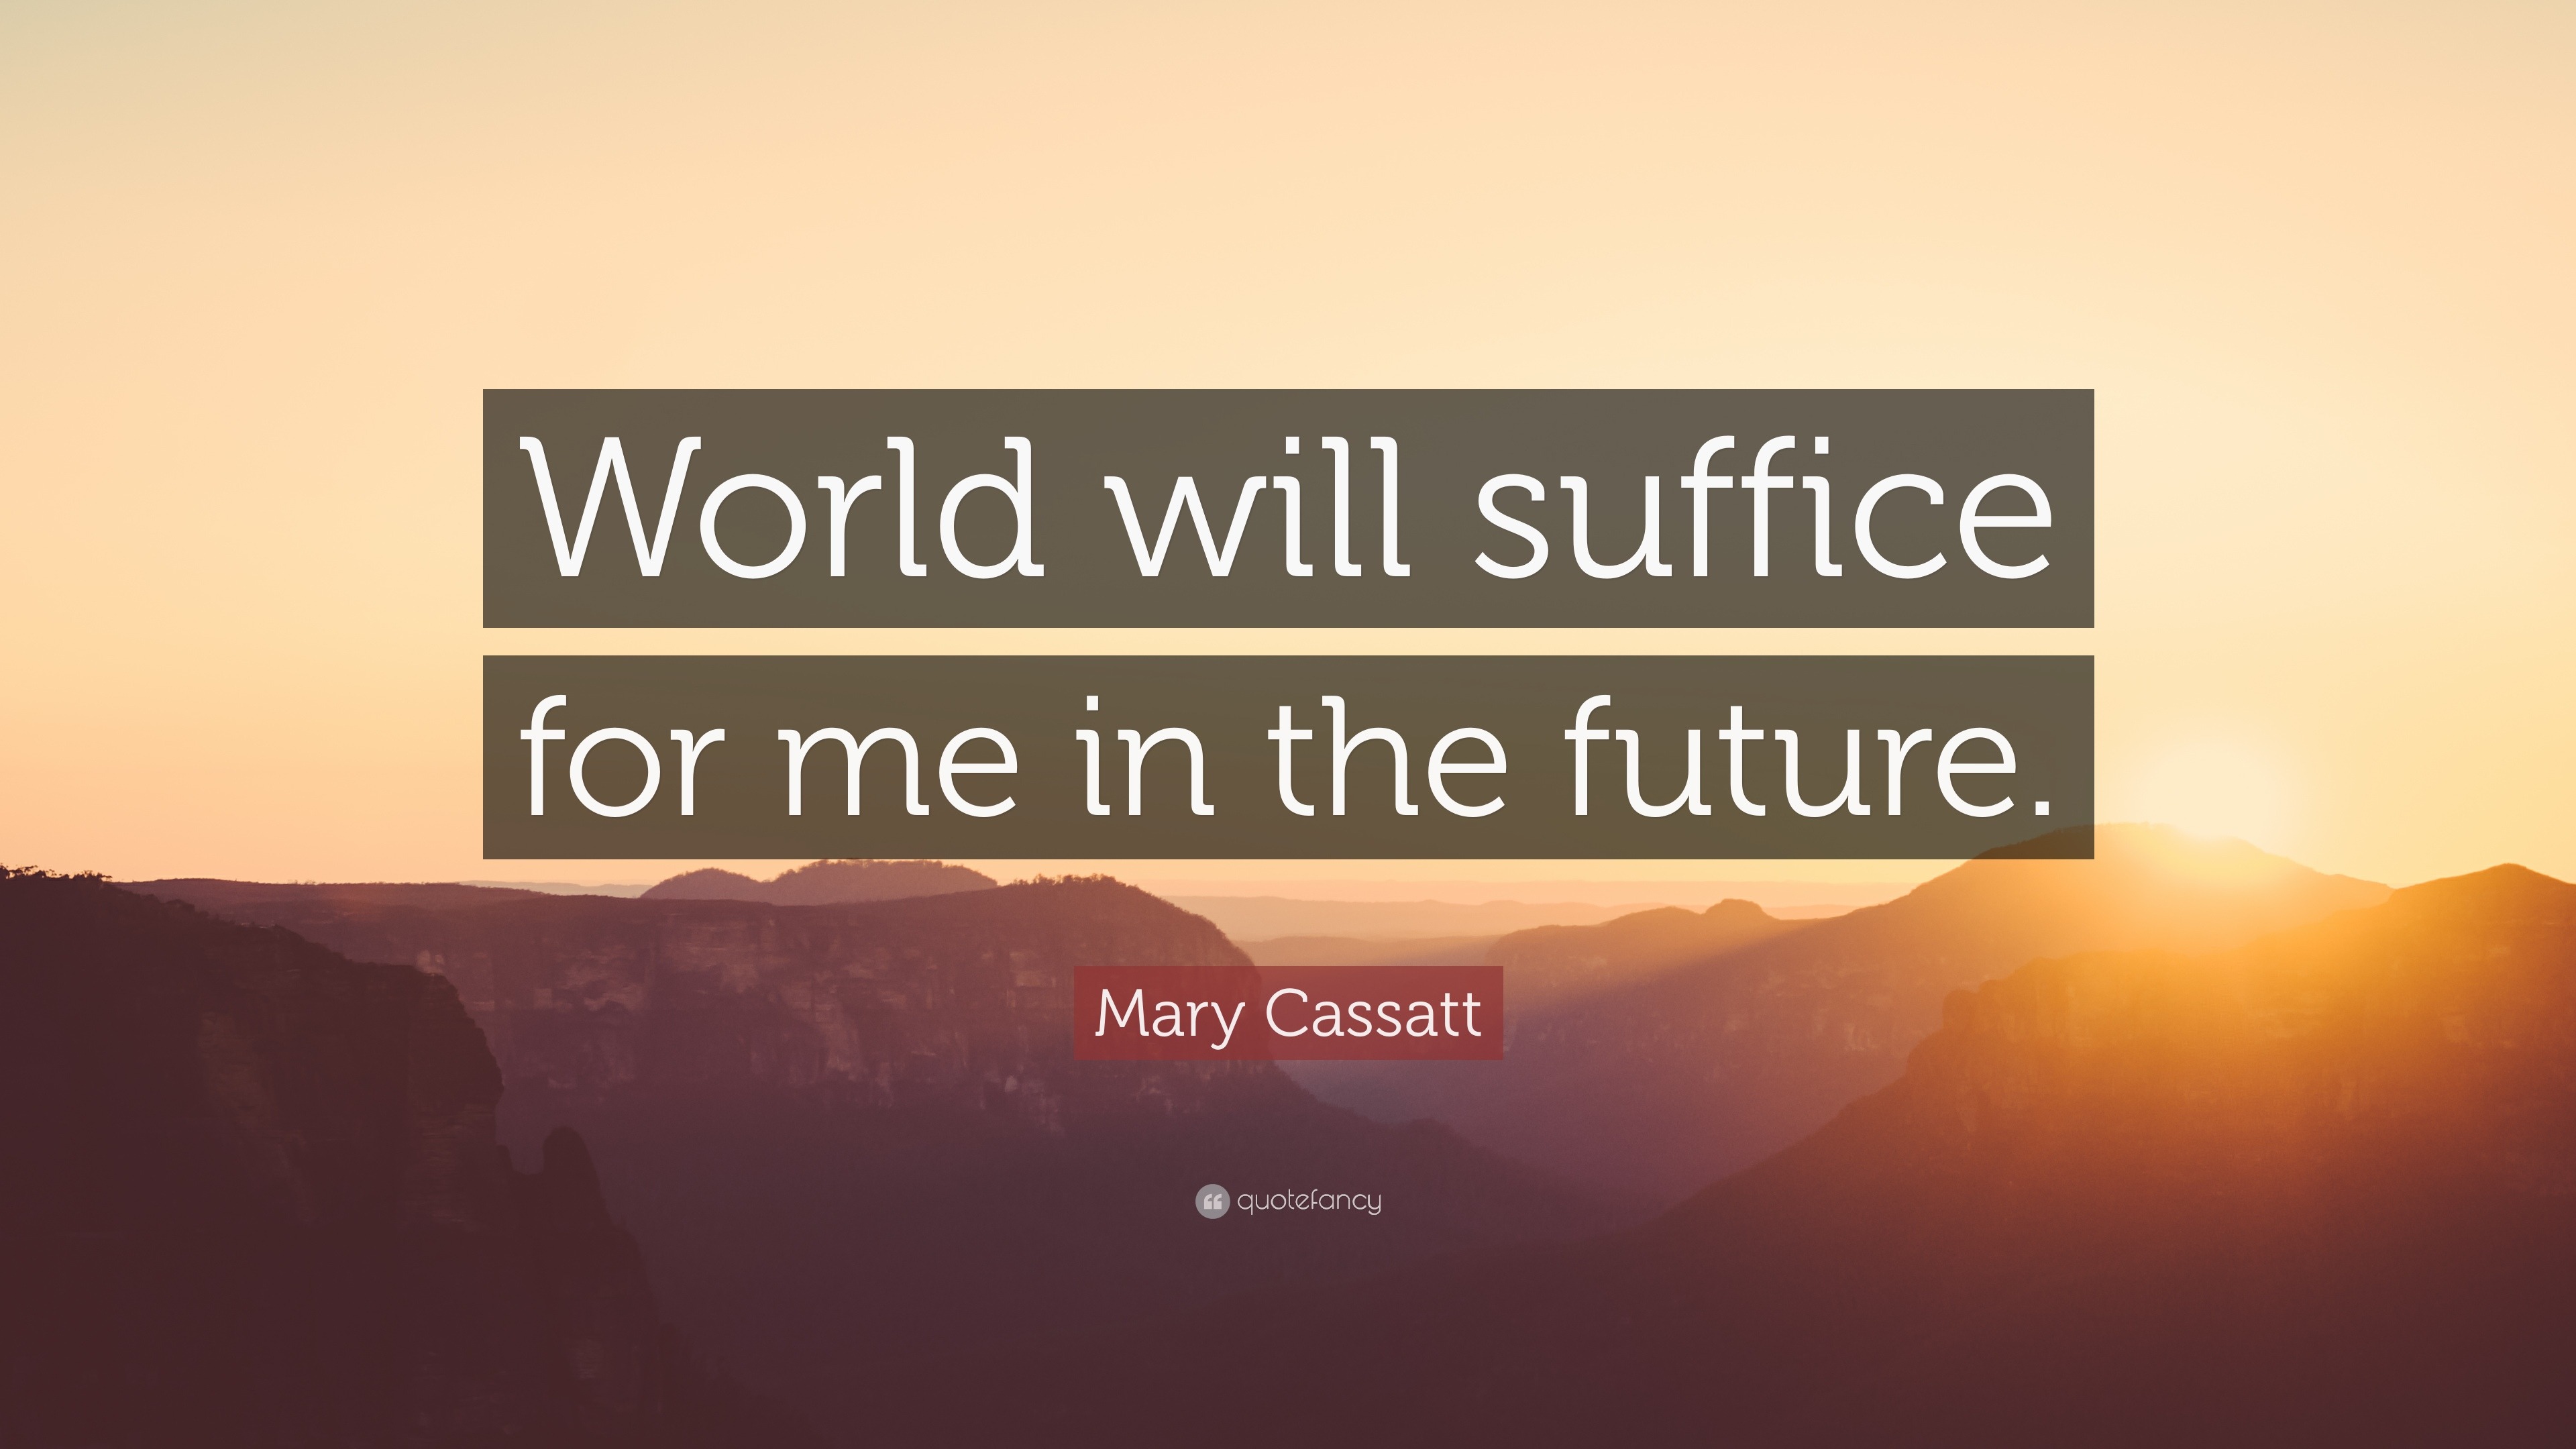 Mary Cassatt Quotes (13 wallpapers) - Quotefancy